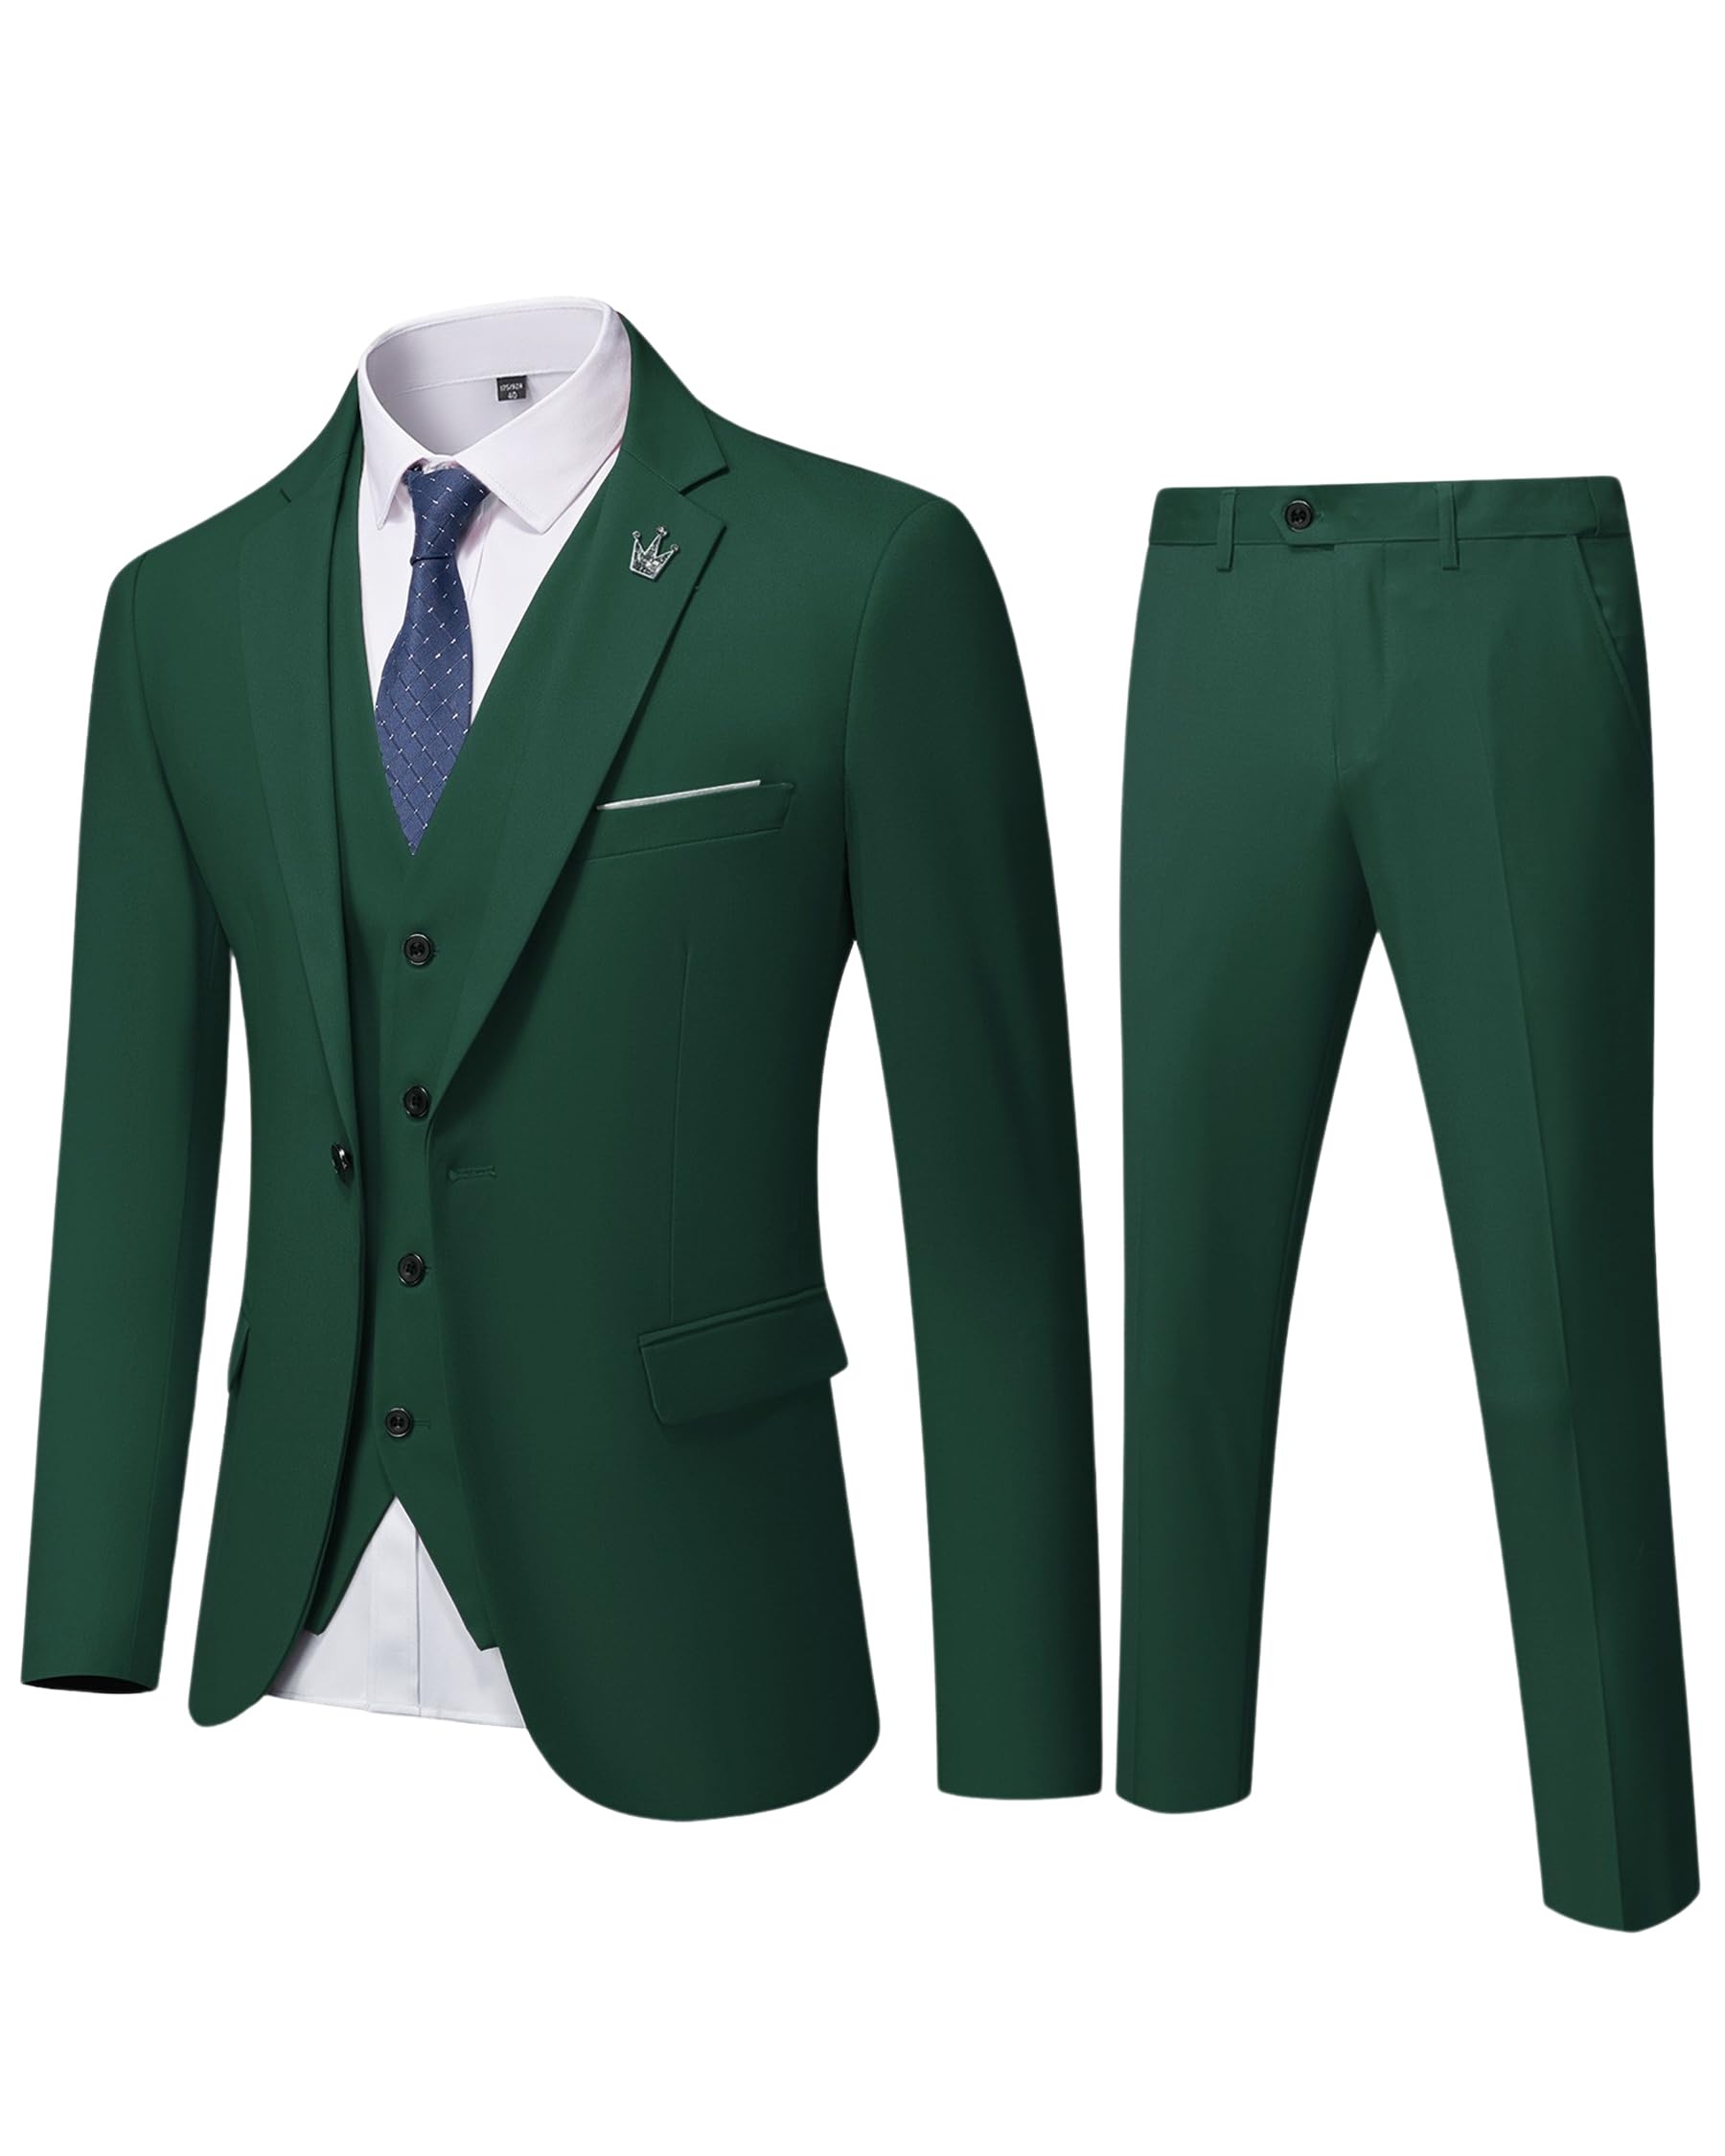 EastSide Herren Slim Fit 3-teiliger Anzug, Ein-Knopf-Blazer-Set, Jacke, Weste & Hose, dunkelgrün, XL